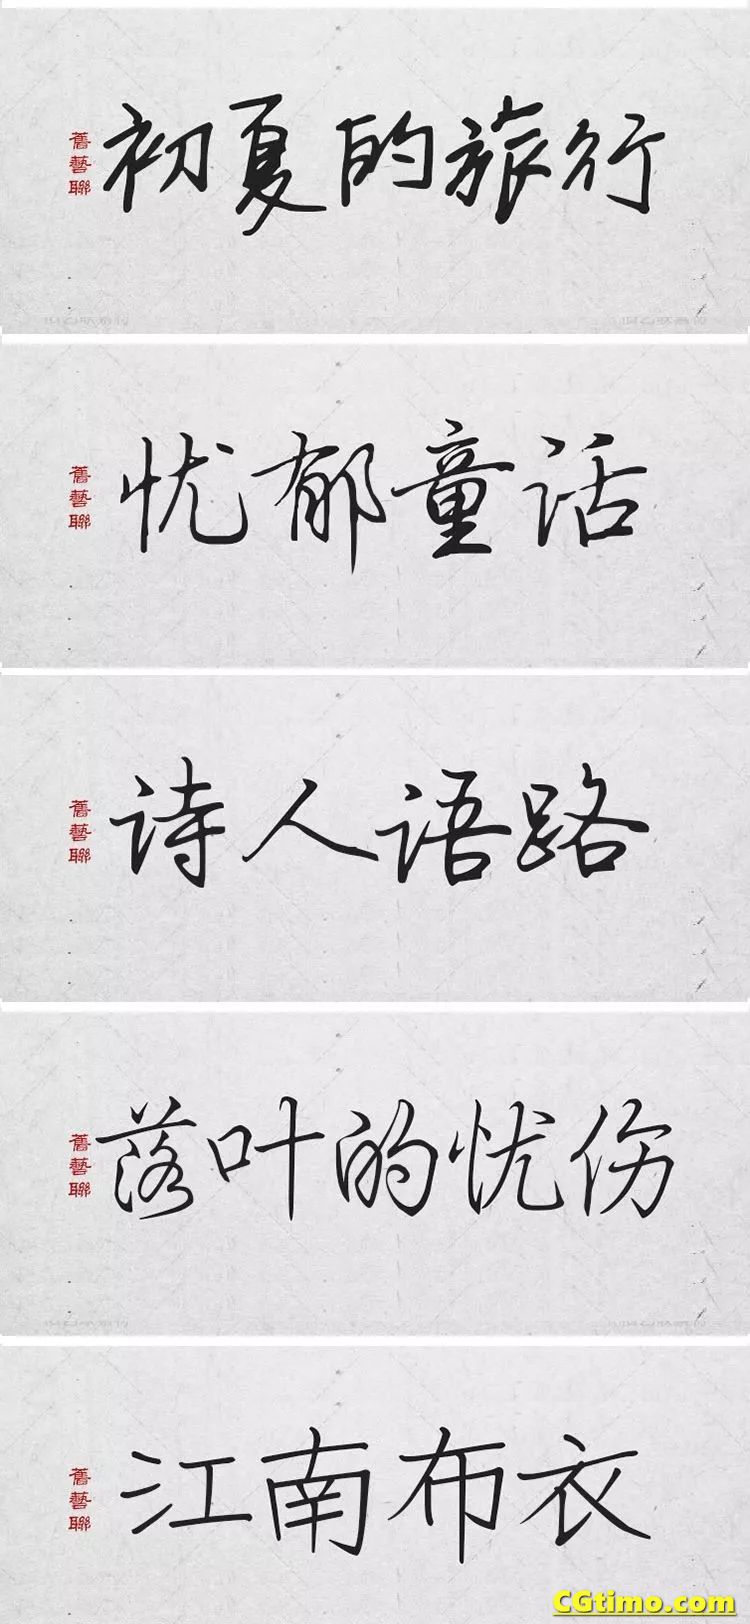 字体-300款中国风高端毛笔字体+笔触合集 字体下载 第6张